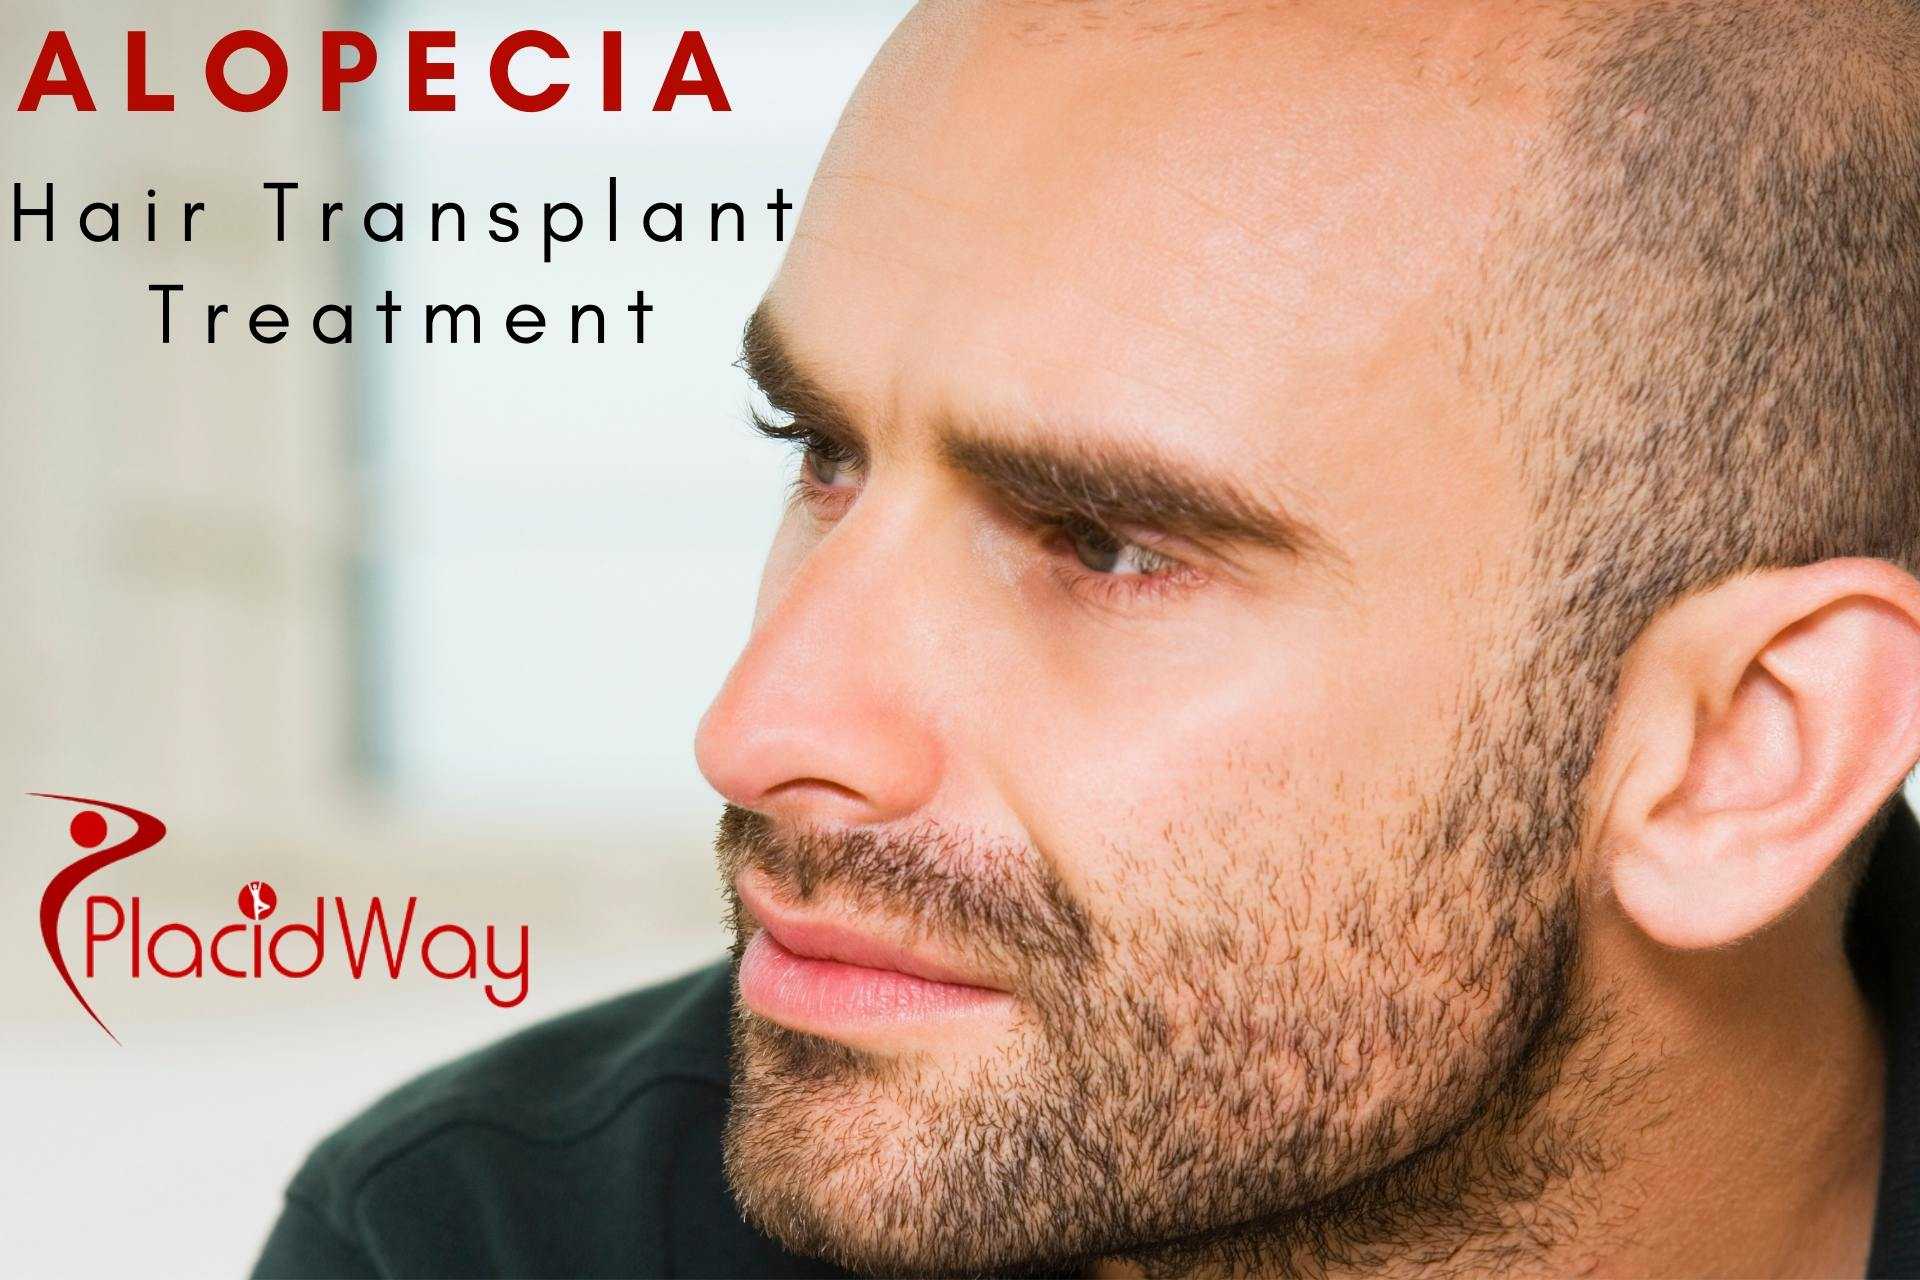 Alopecia Hair Transplant Treatment